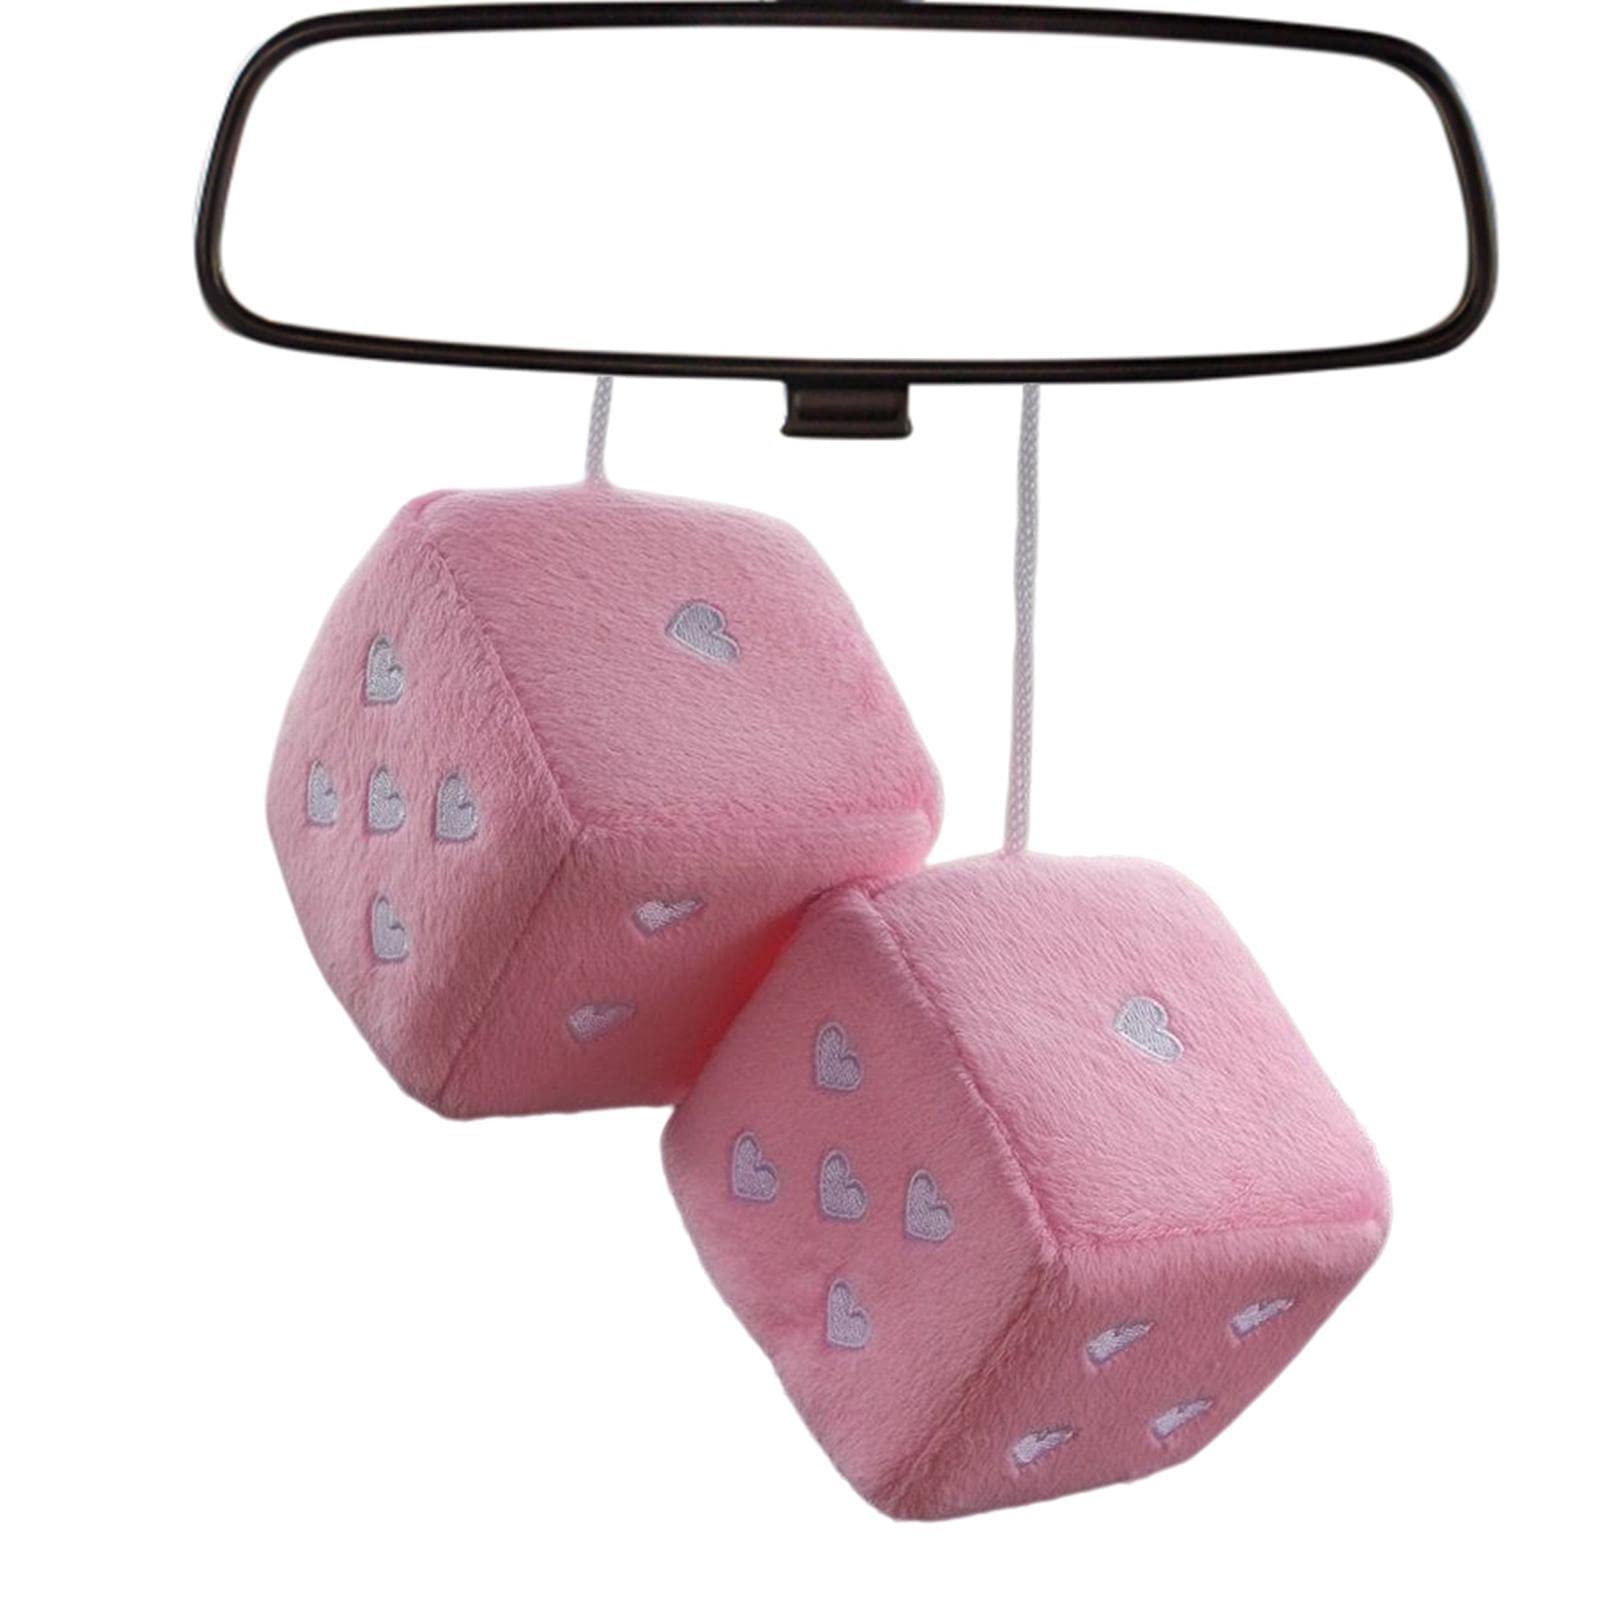 Würfel für Autospiegel, Plüschwürfel mit herzförmigen Punkten zum Aufhängen für Auto-Rückspiegel – Auto-Anhänger, Innen-Rückspiegel-Dekoration, Auto-Dekoration zum Aufhängen, Woyufen von woyufen